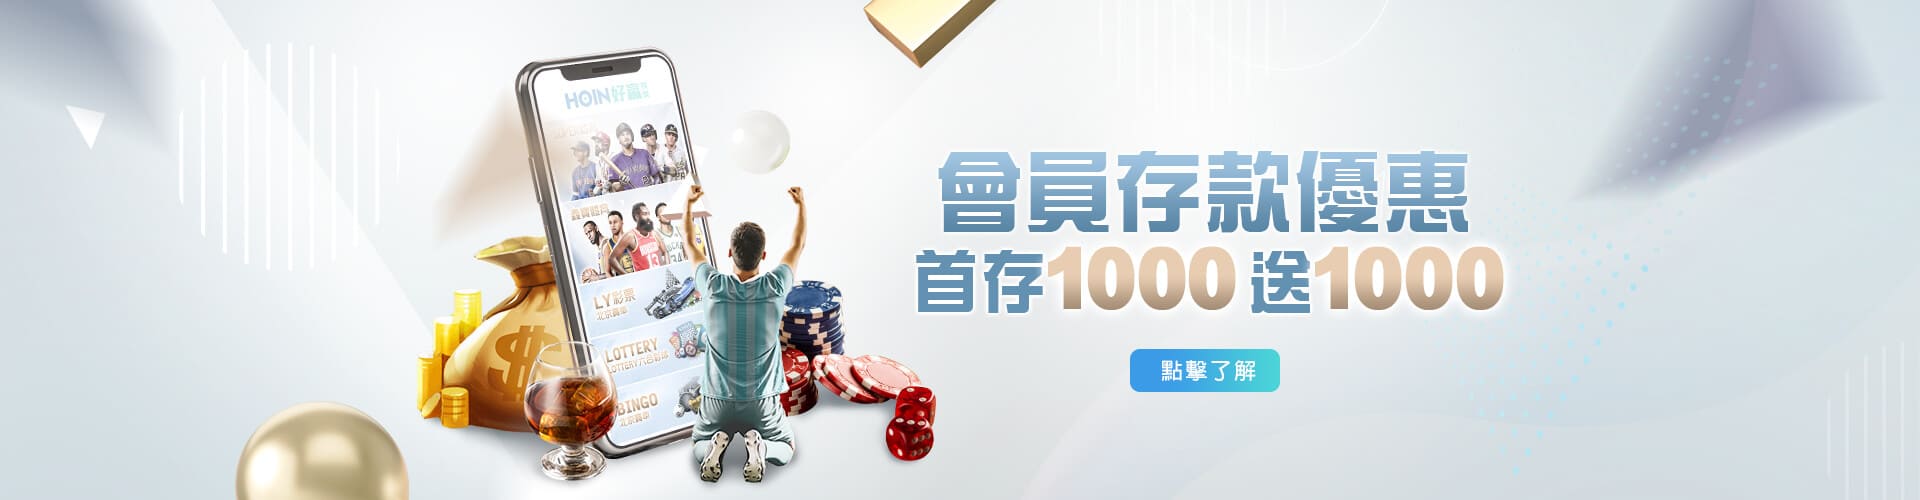 免費教學百家樂公式-HOYA娛樂城推薦存款1000送1000優惠